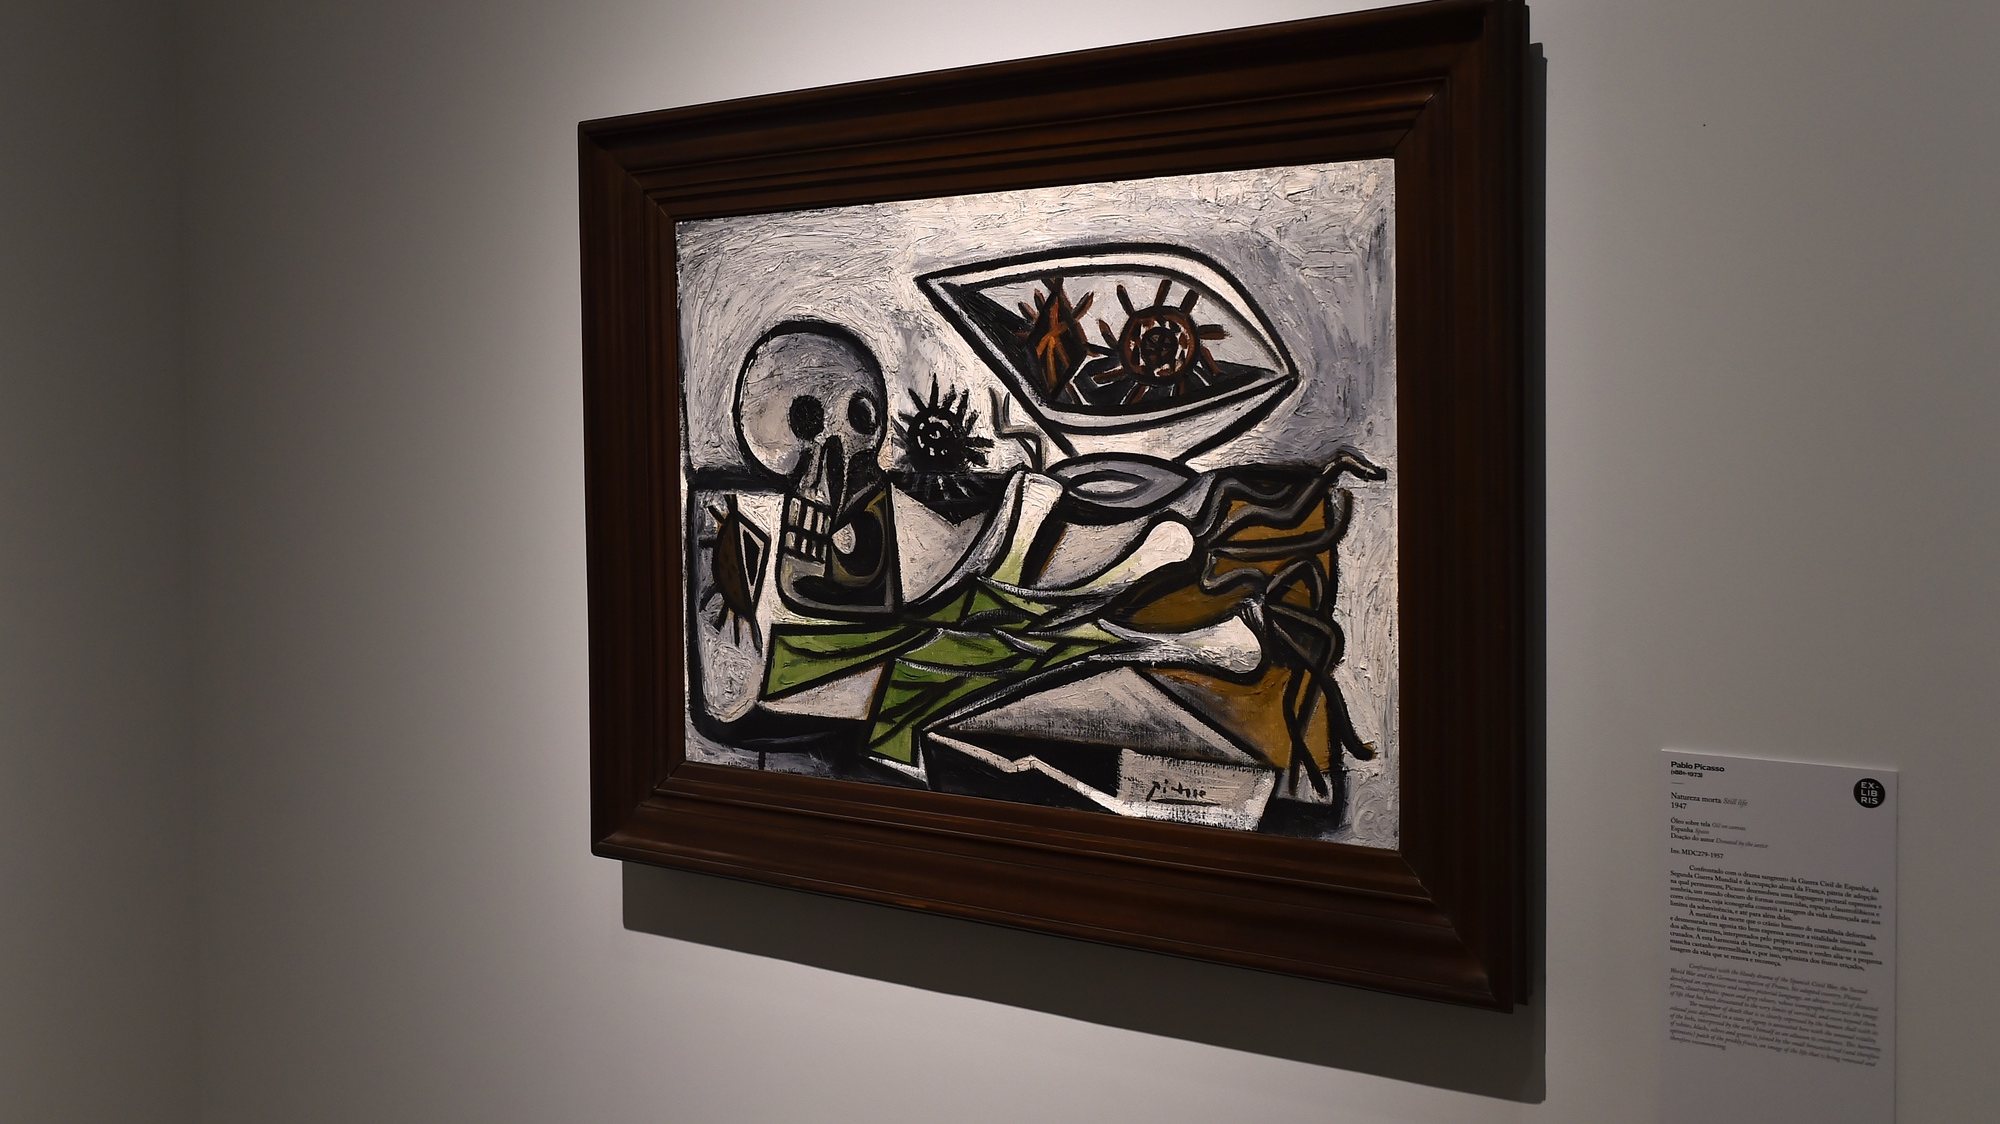 O museu do Caramulo tem várias obras do conhecido artista Picasso. A mais emblemática é uma pintura que foi doada nos anos 50 pelo próprio ao museu e está agora exposta, Tondela, 19 de abril de 2023. (ACOMPANHA TEXTO DO DIA 22 DE ABRIL DE 2023). NUNO ANDRÉ FERREIRA/LUSA